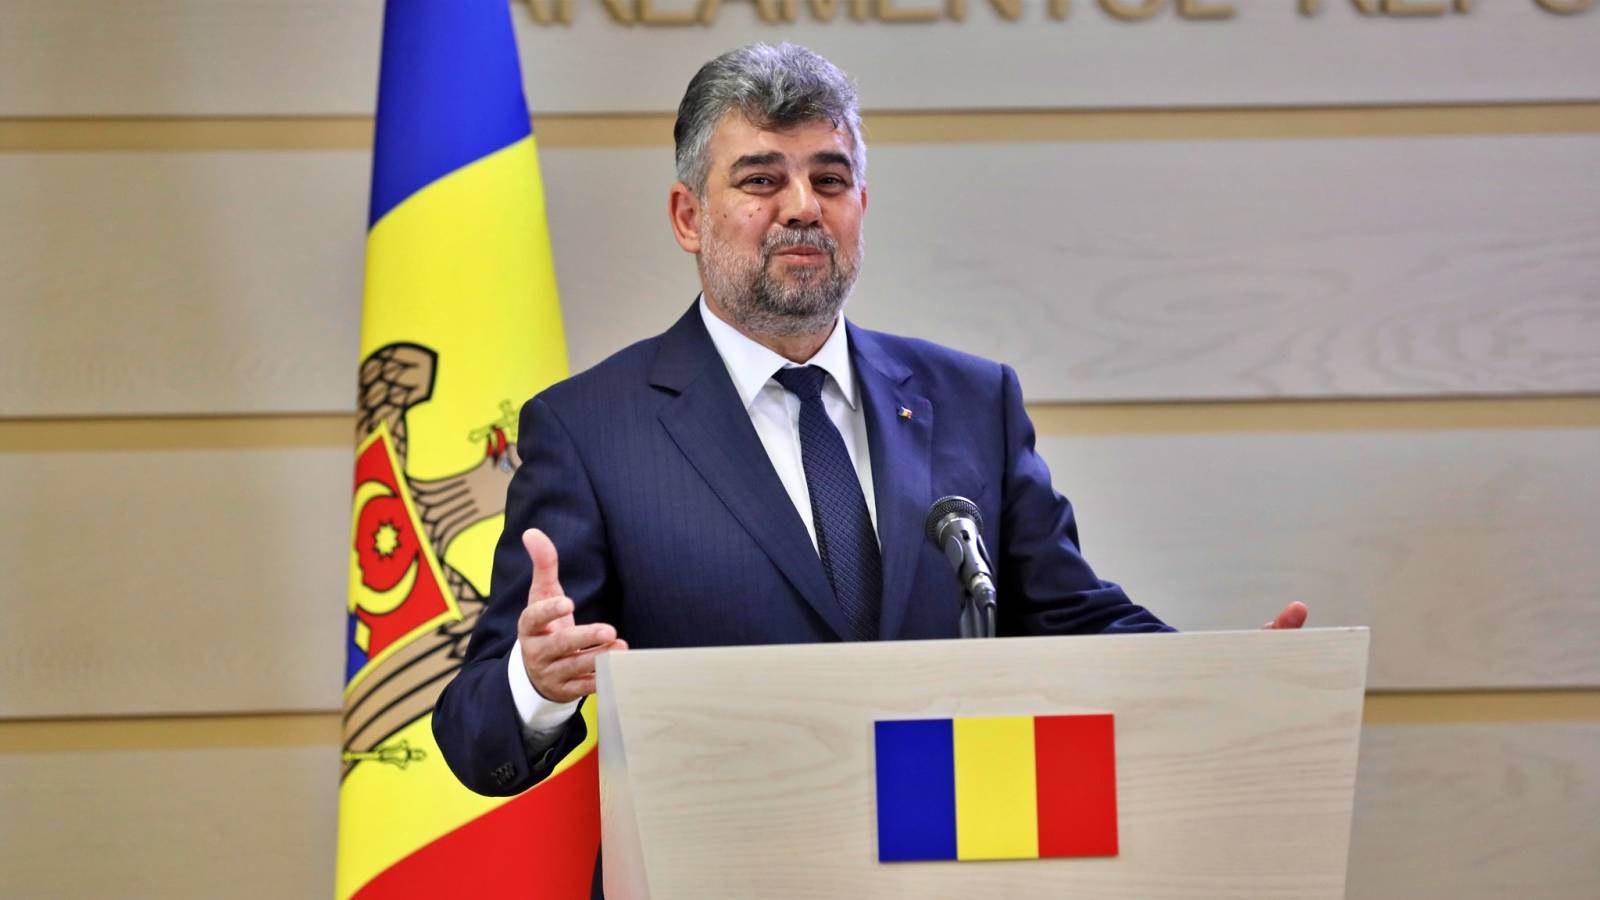 Marcel Ciolacu Annonces officielles DERNIÈRE FOIS des Roumains au président du PSD